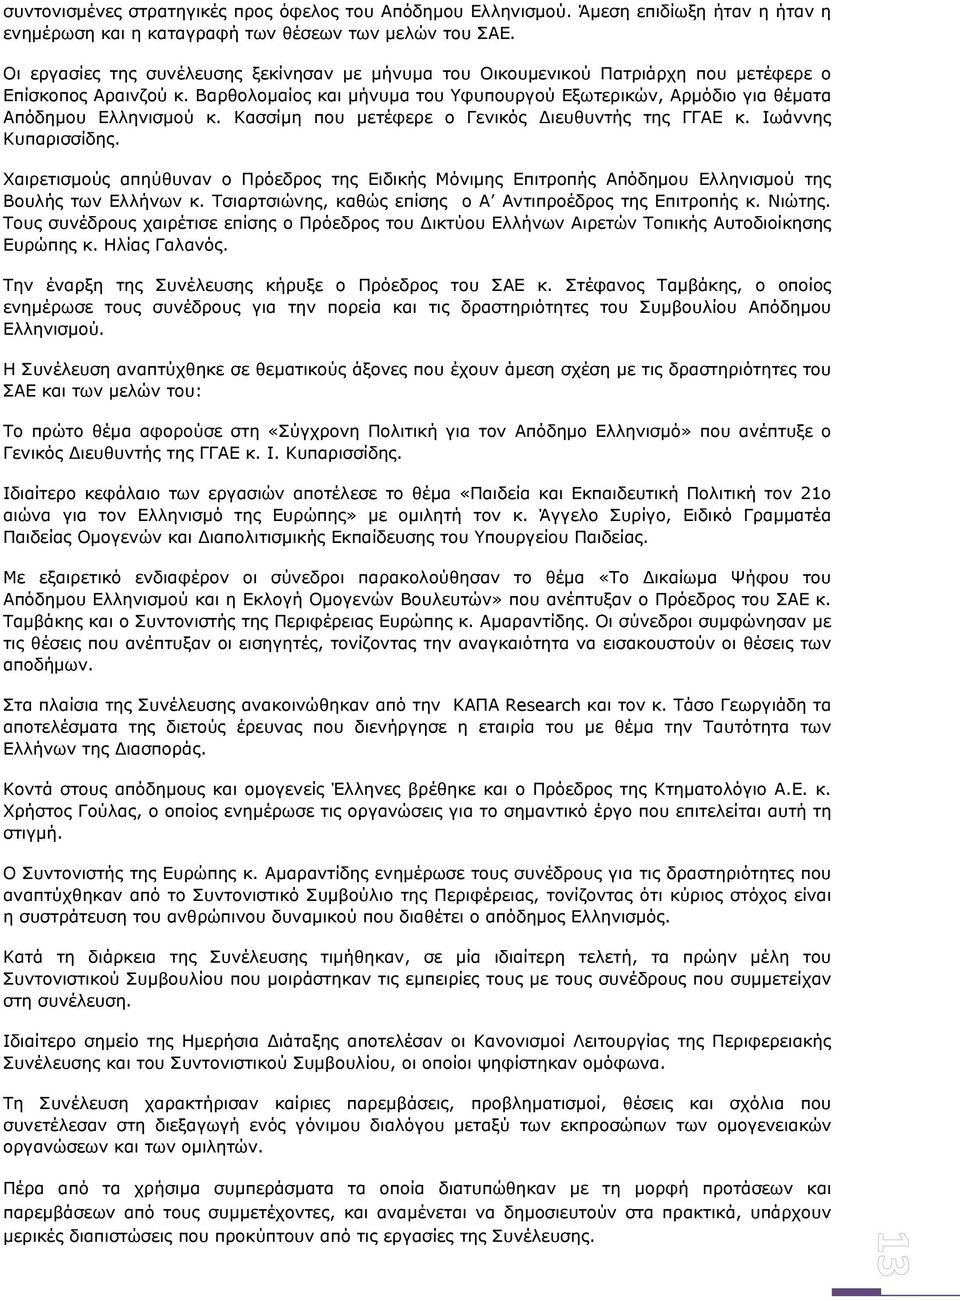 Βαρθολομαίος και μήνυμα του Υφυπουργού Εξωτερικών, Αρμόδιο για θέματα Απόδημου Ελληνισμού κ. Κασσίμη που μετέφερε ο Γενικός Διευθυντής της ΓΓΑΕ κ. Ιωάννης Κυπαρισσίδης.